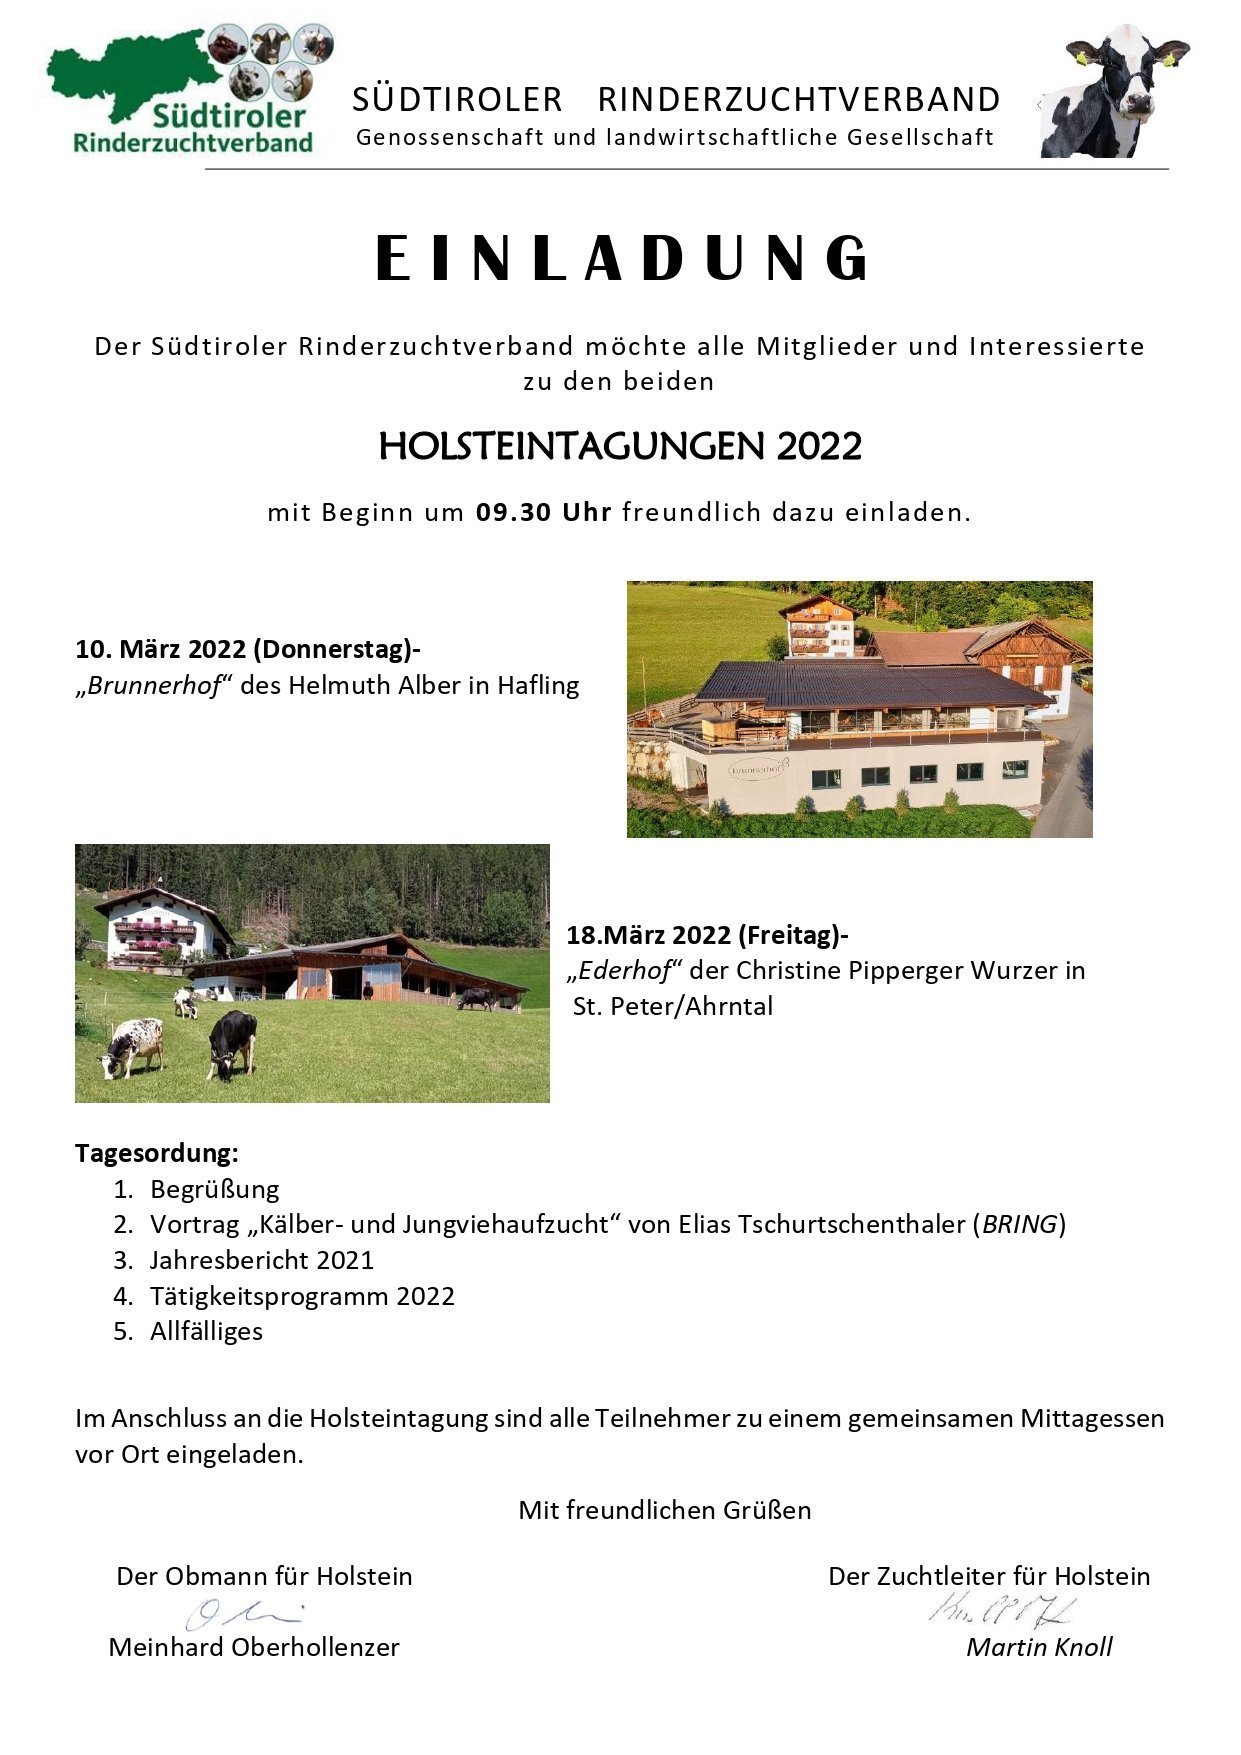 Holsteintagungen 2022